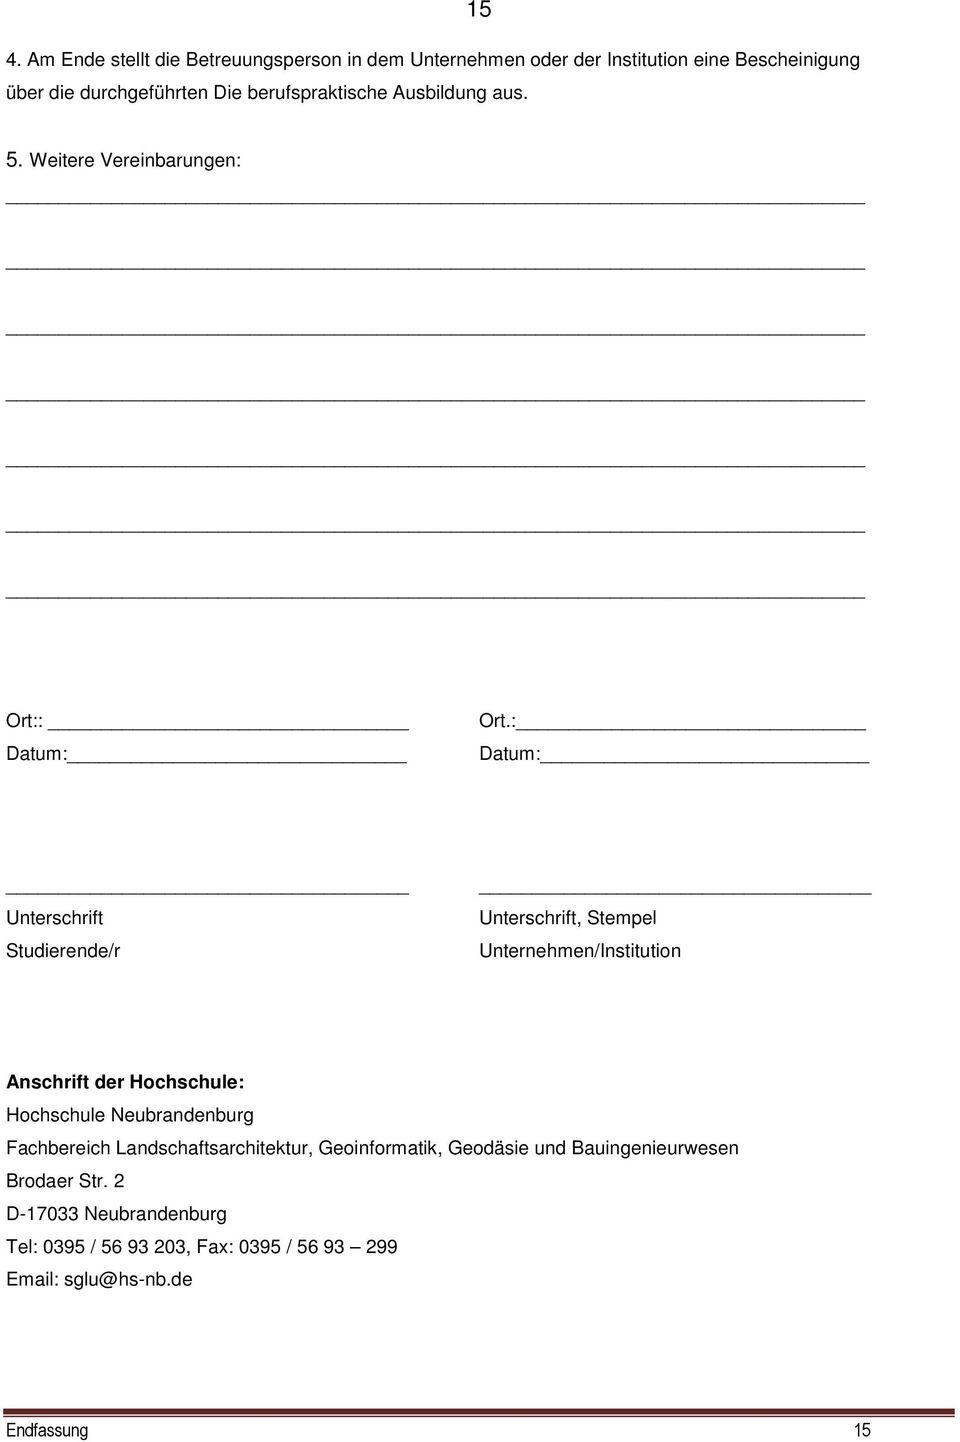 : Datum: Unterschrift Studierende/r Unterschrift, Stempel Unternehmen/Institution Anschrift der Hochschule: Hochschule Neubrandenburg